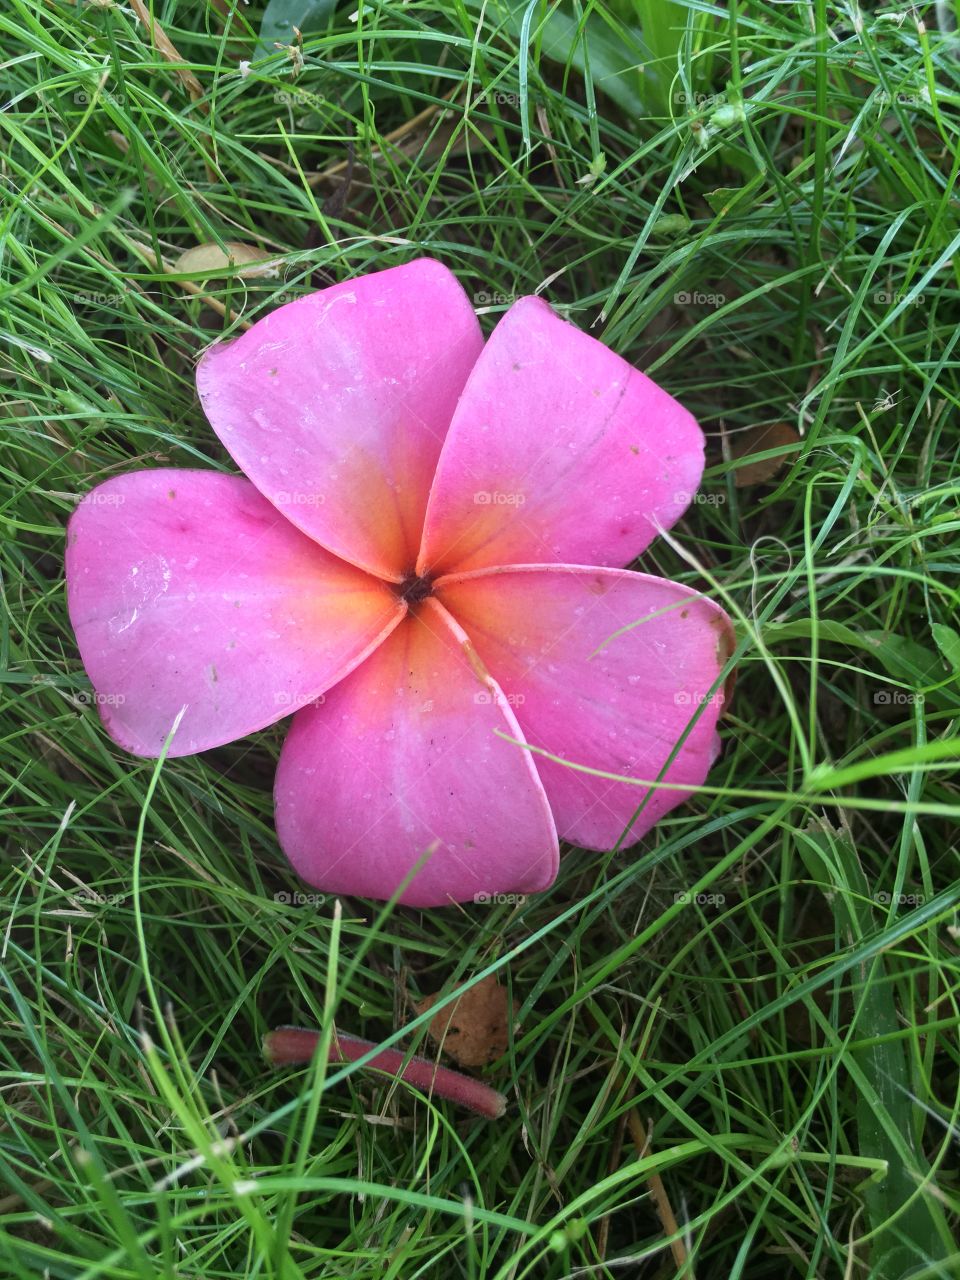 Pink Plumeria flower